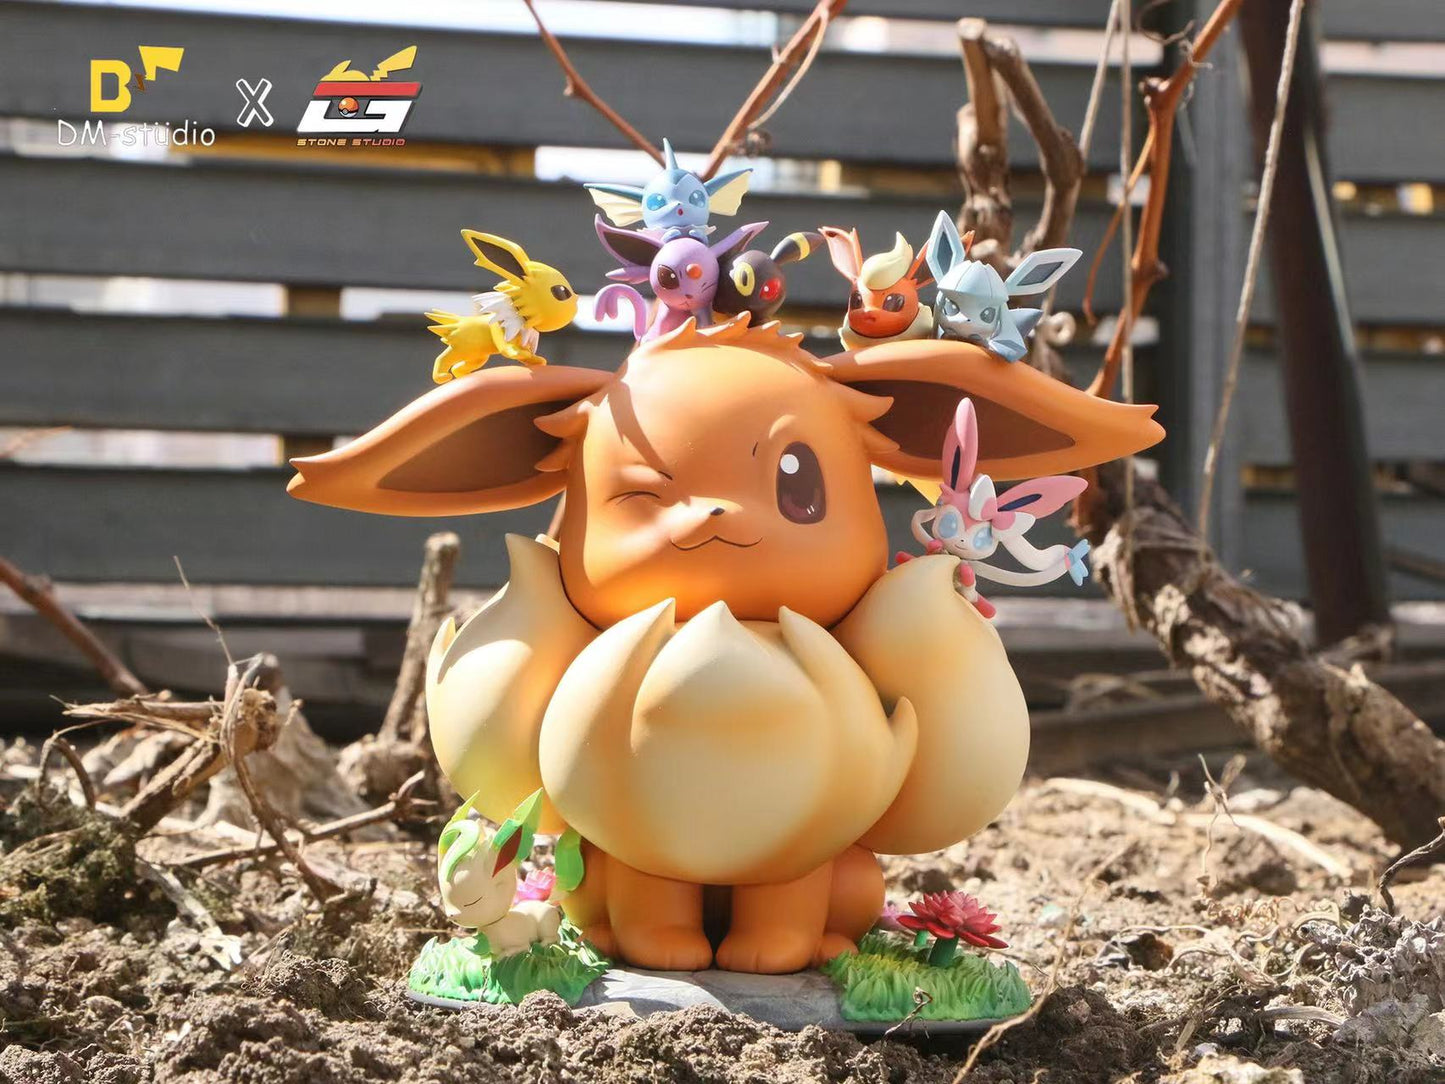 〖Sold Out〗Pokemon Eevee Family Model Statue Resin  - DM&BQG Studio